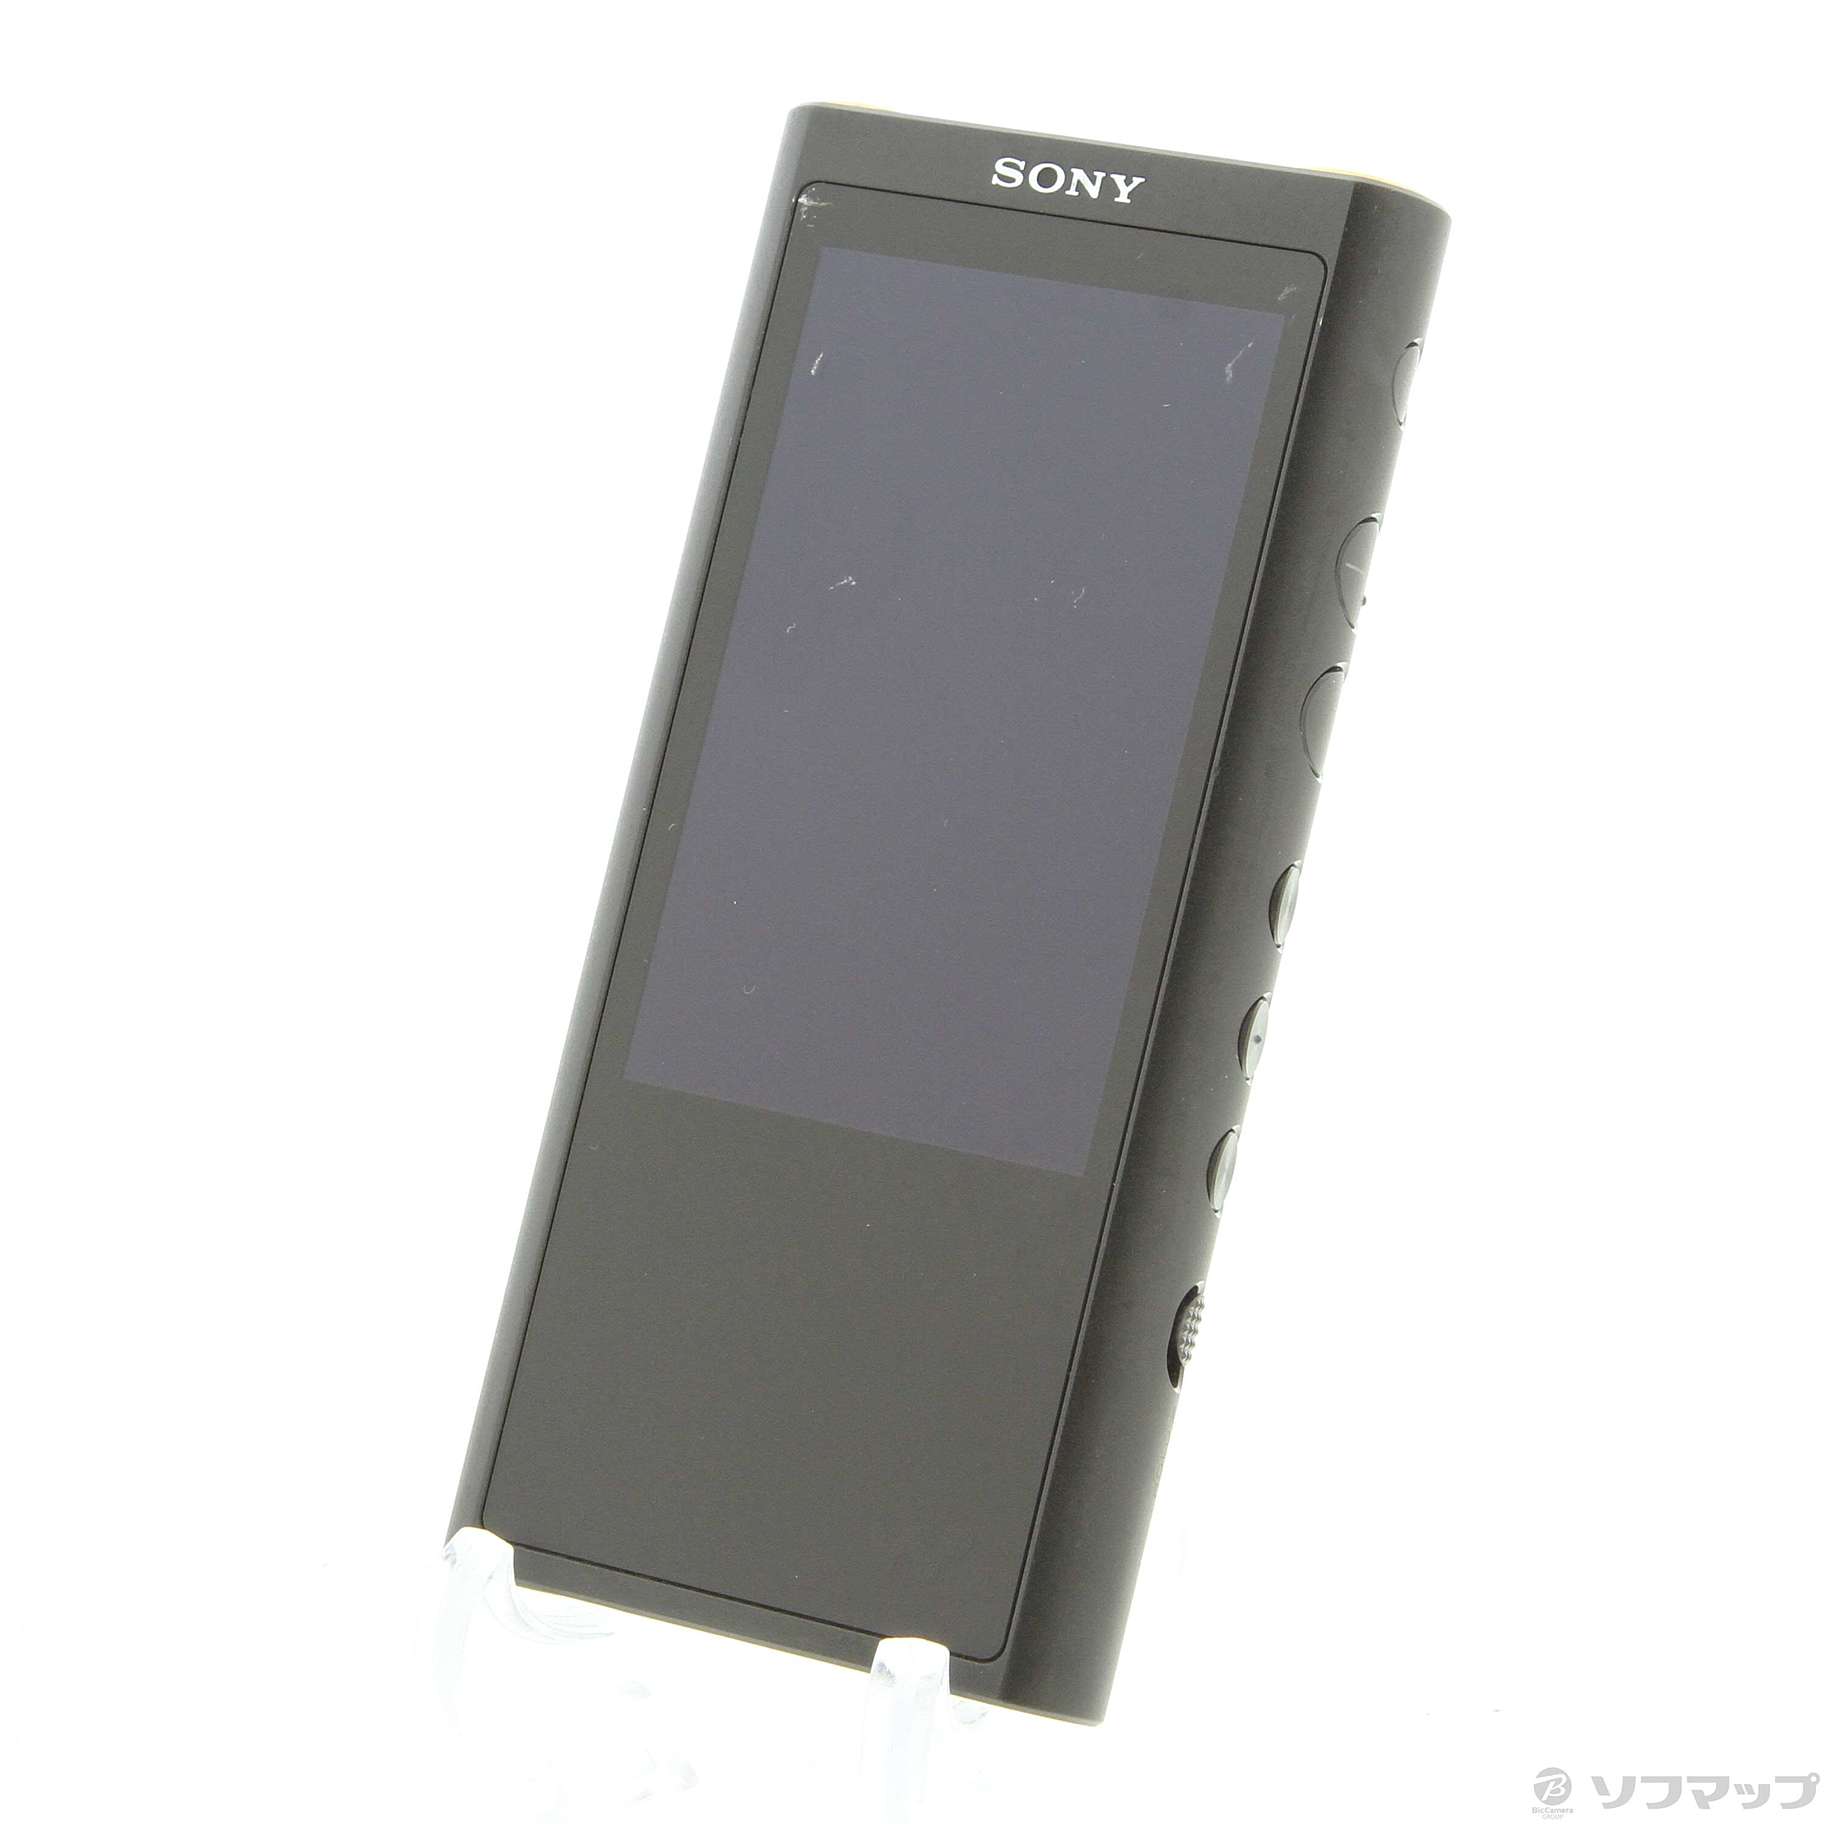 WALKMAN SONY NW ZX300 64GB